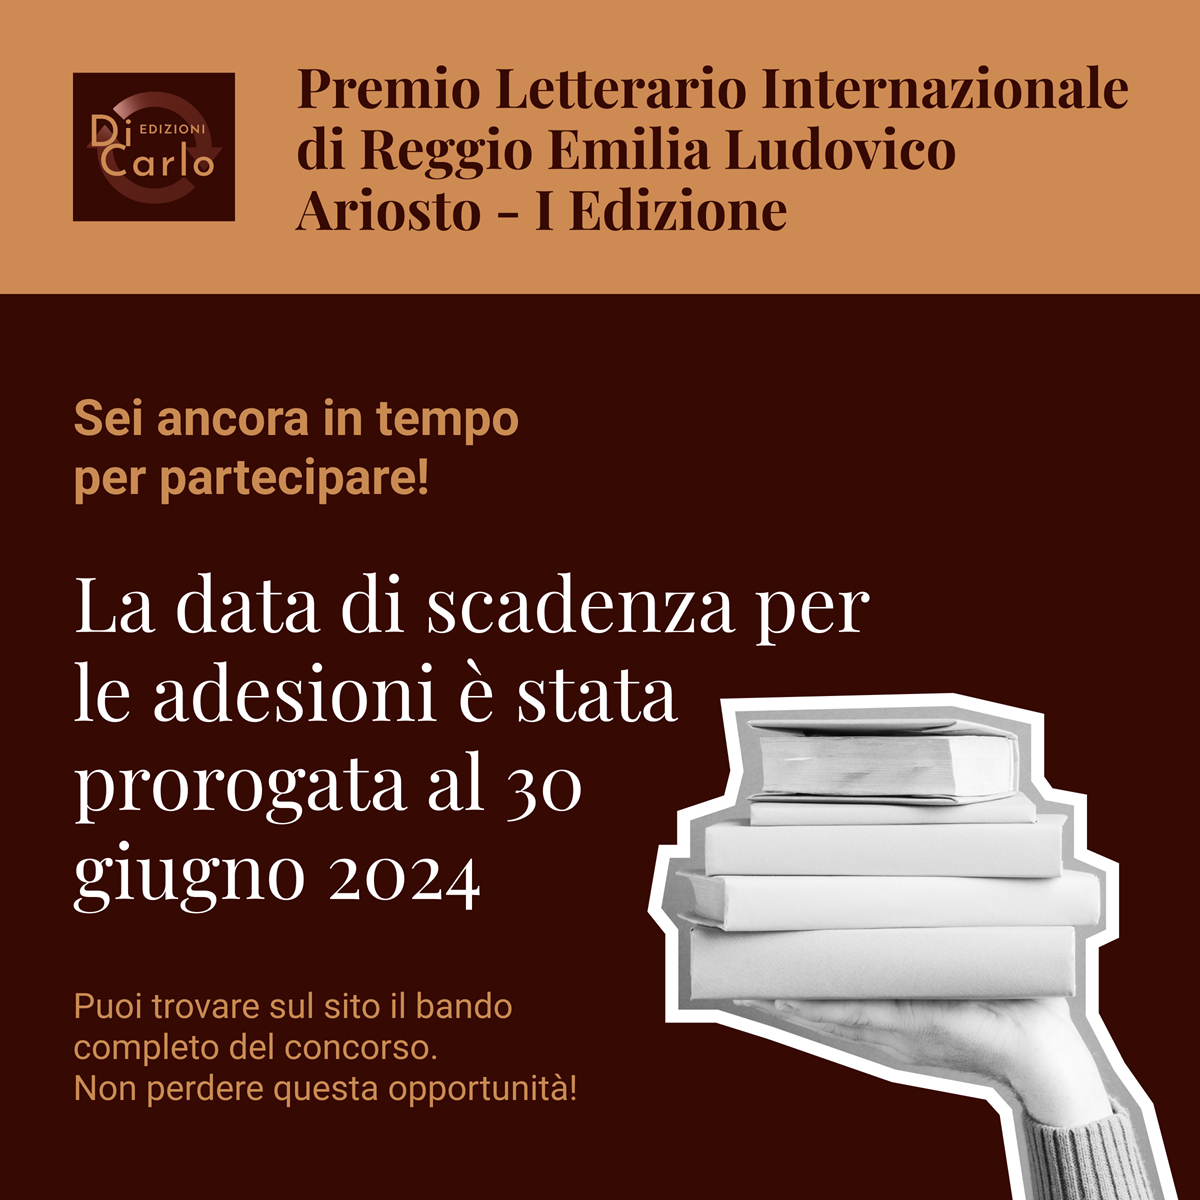 Premio Letterario Internazionale di Reggio Emilia Ludovico Ariosto